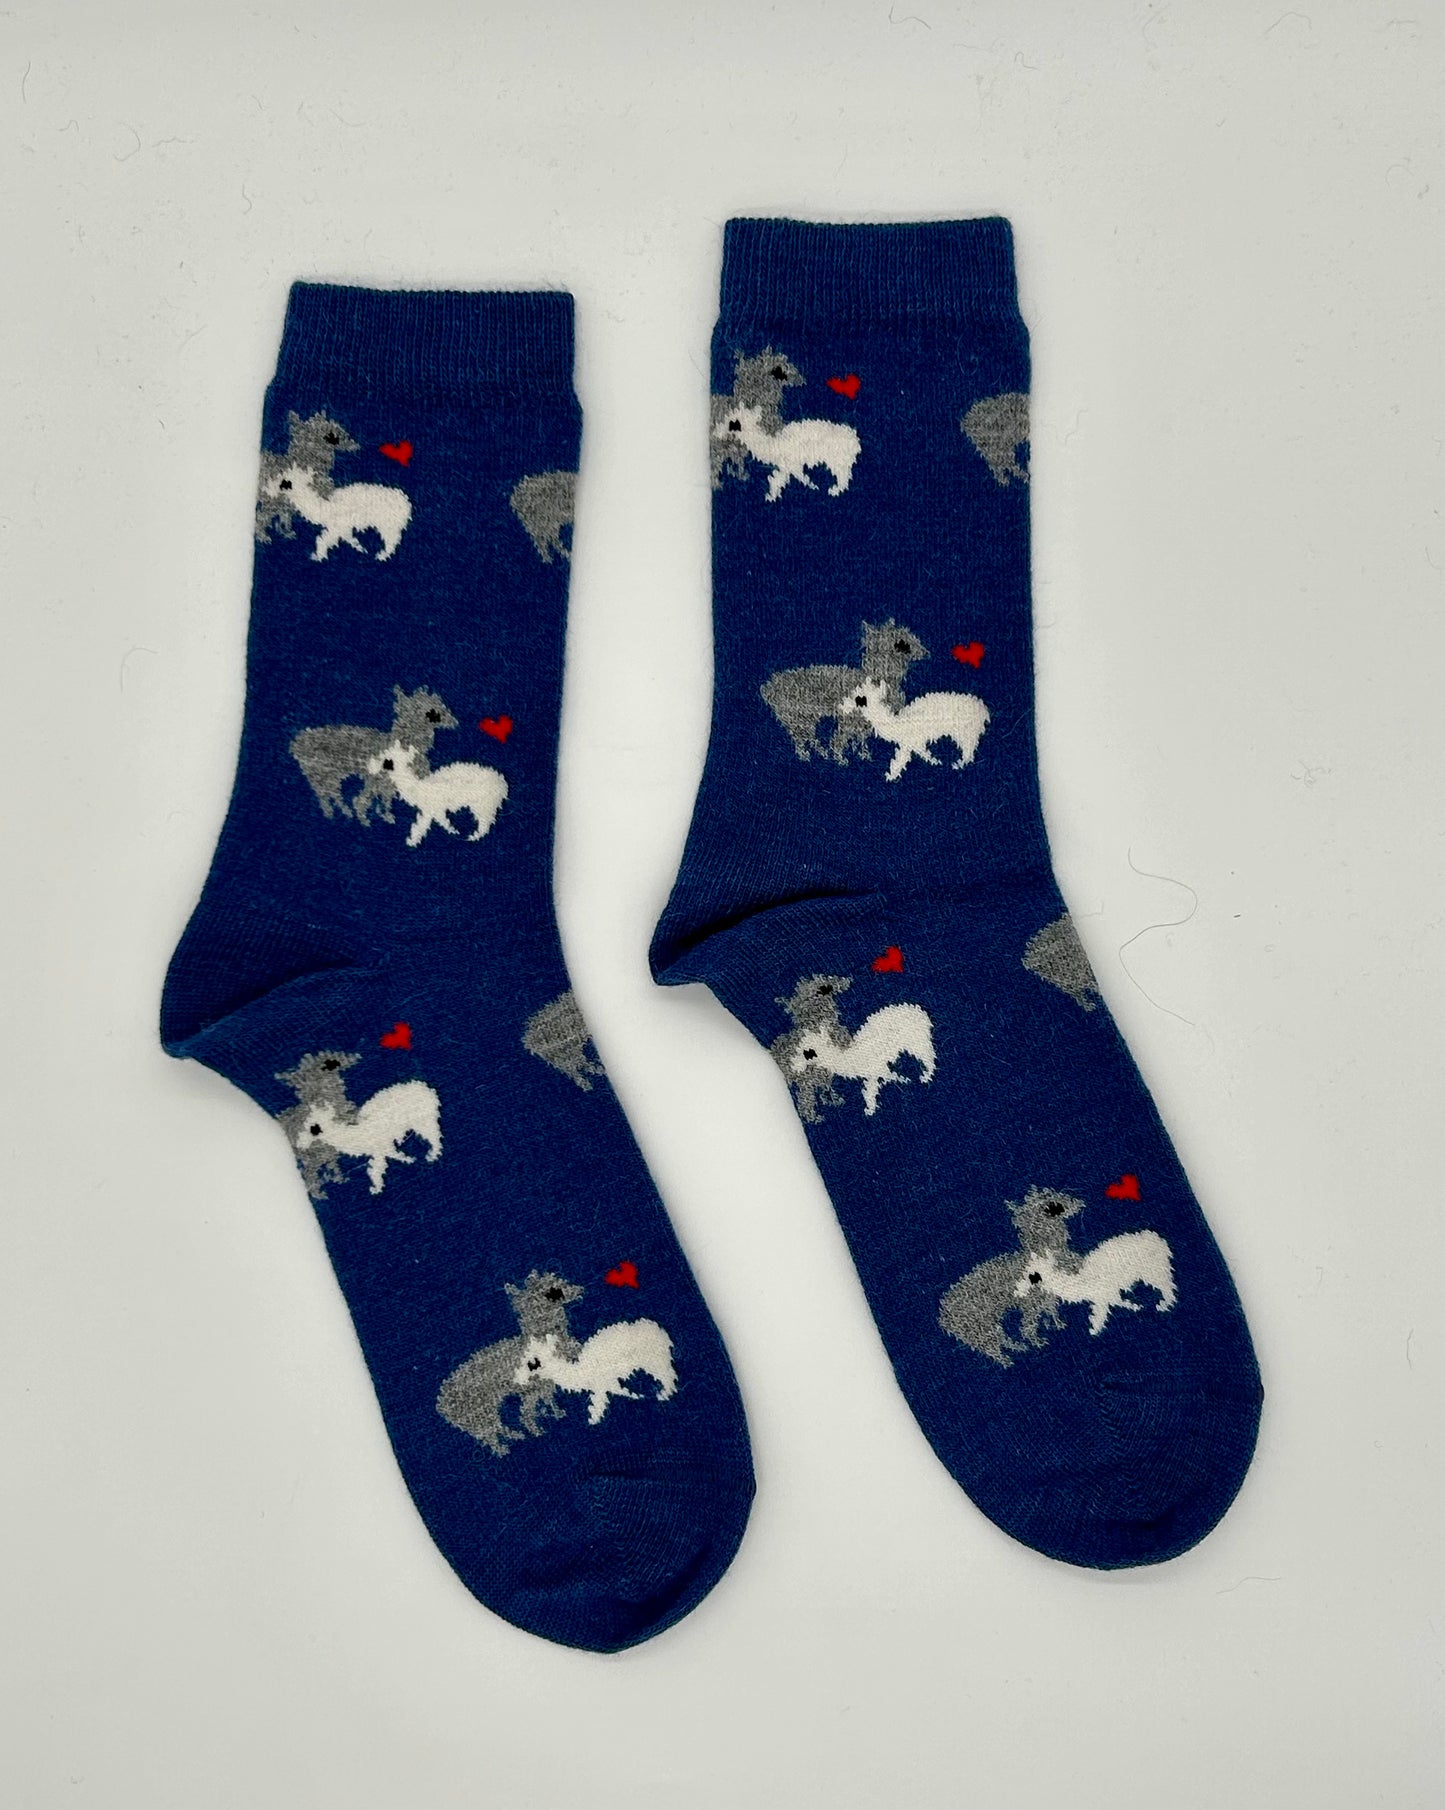 Hohe Alpaka-Socken aus Alpaka Wolle für die kalte Jahreszeit - warme Füße garantiert!